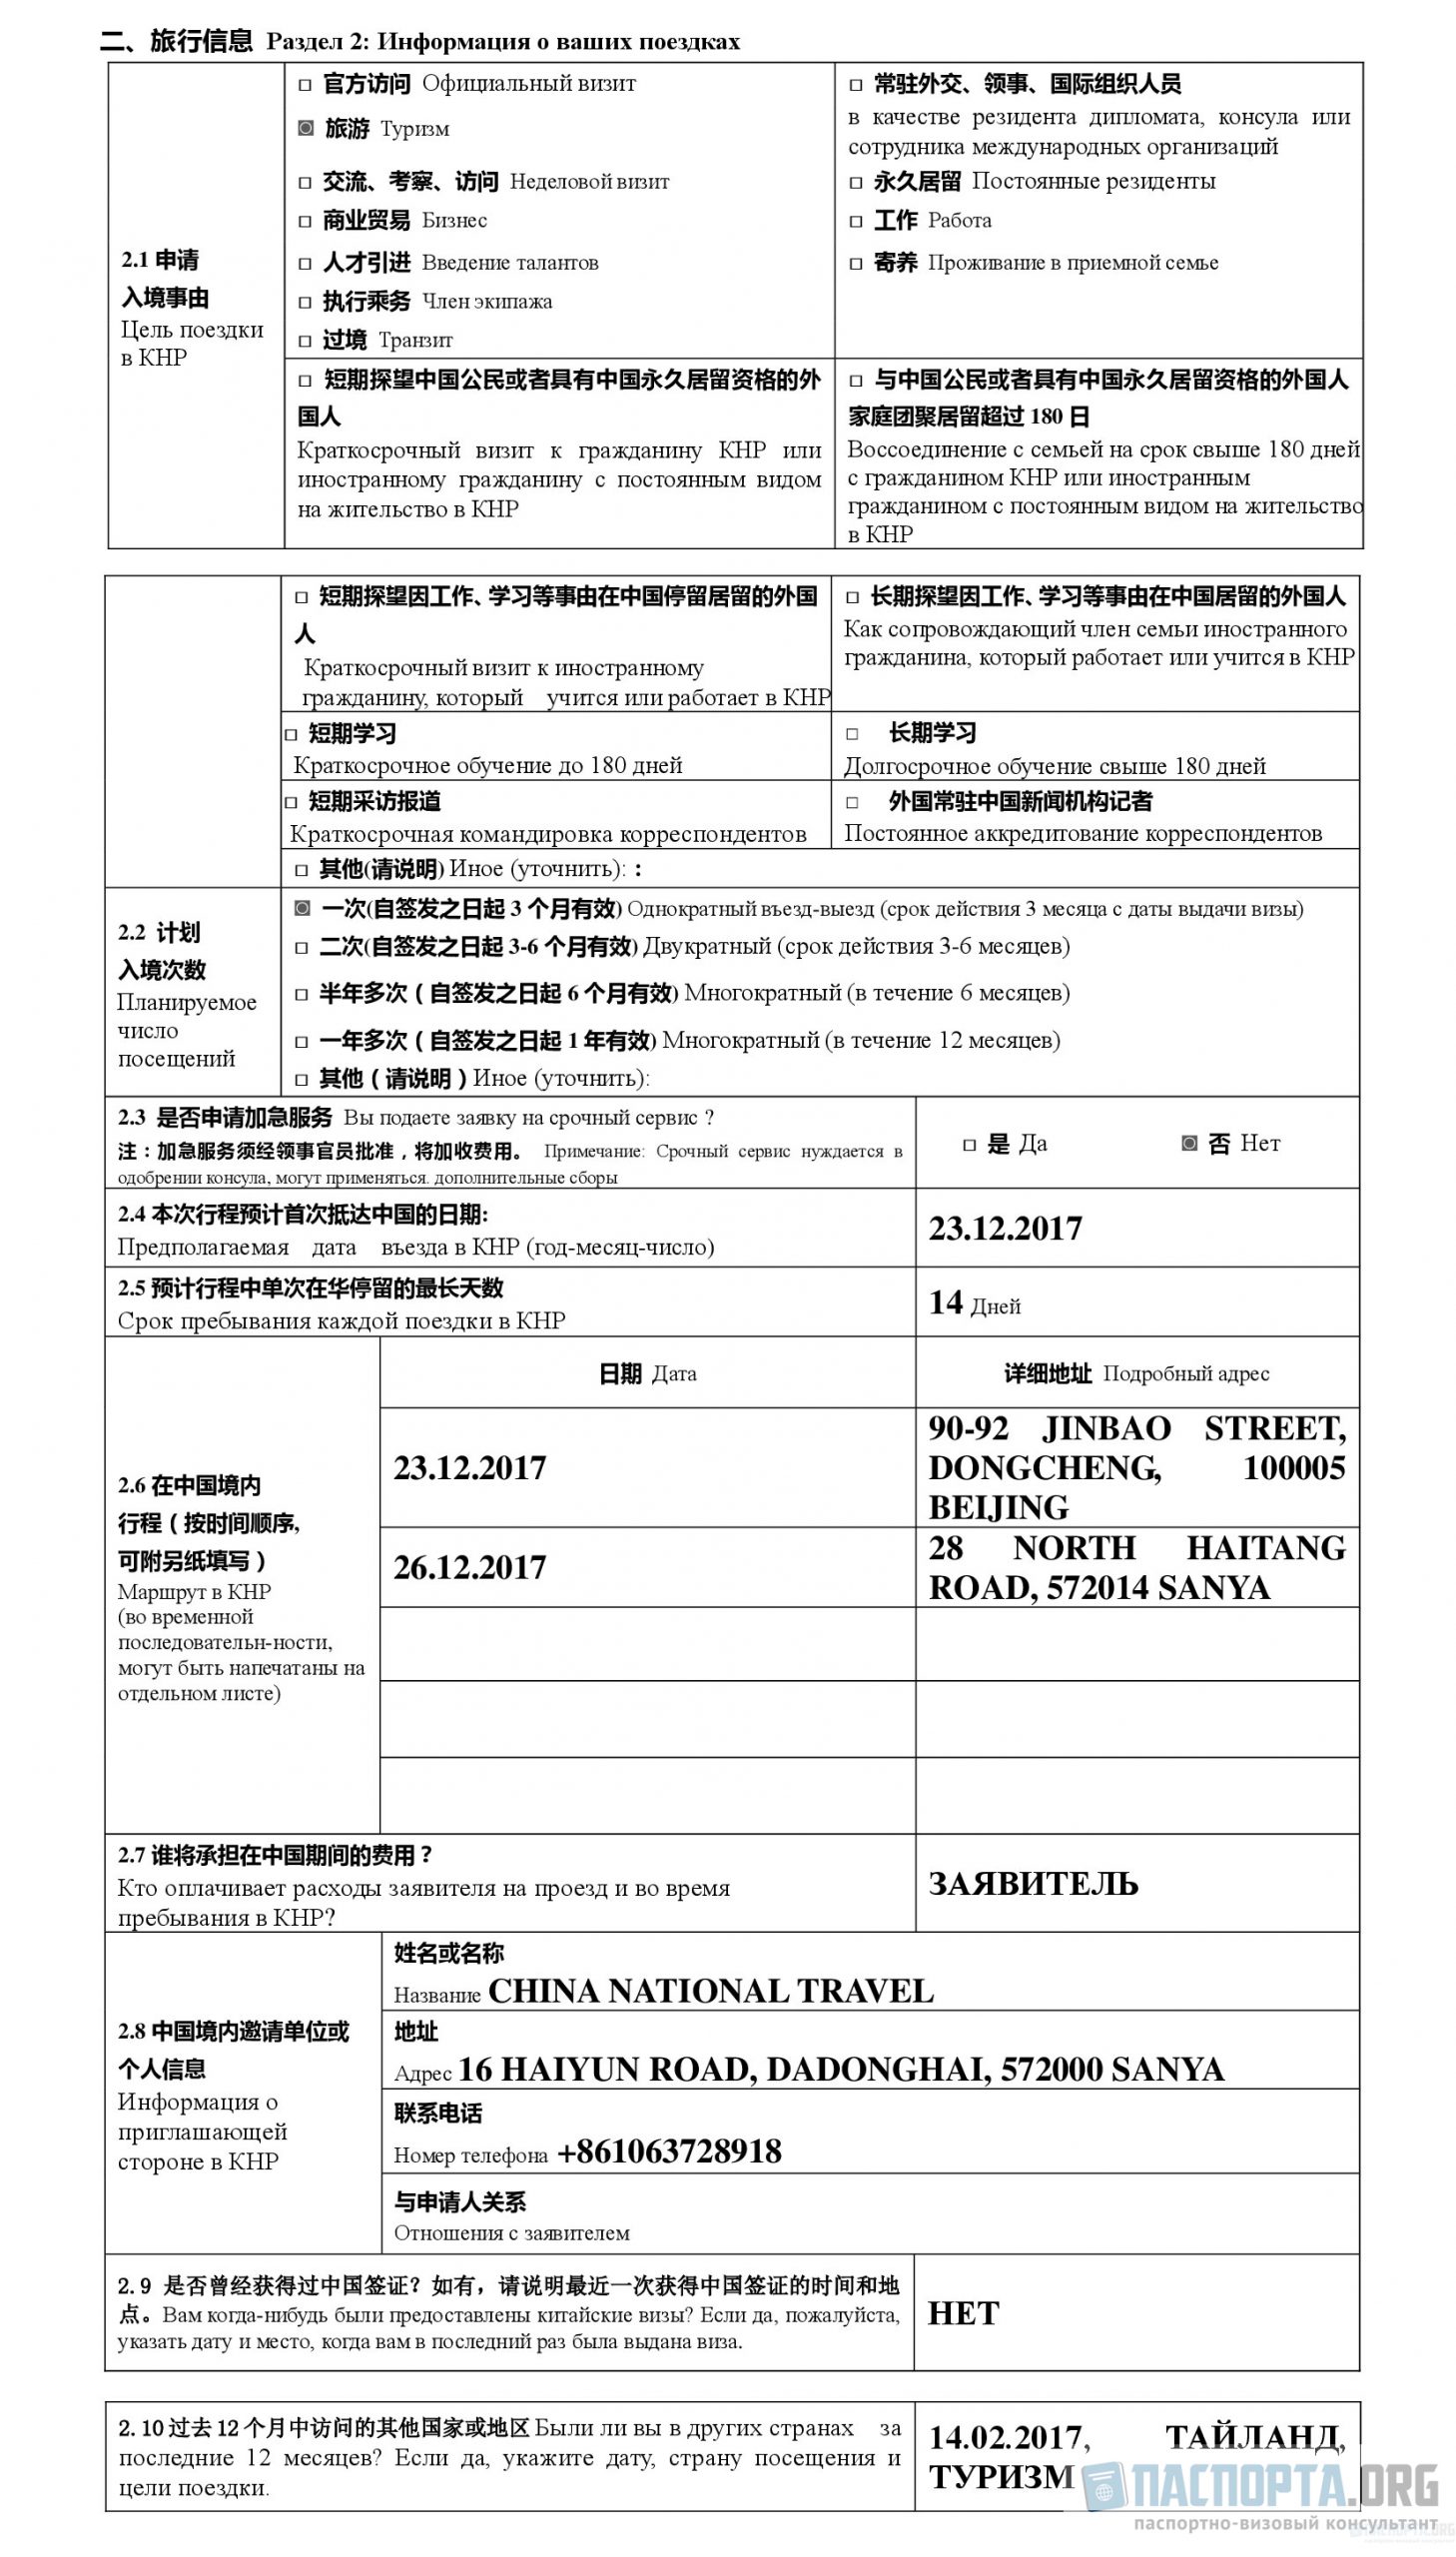 Пример заполнения анкеты на визу в Китай. Раздел 2: Информация о ваших поездках.